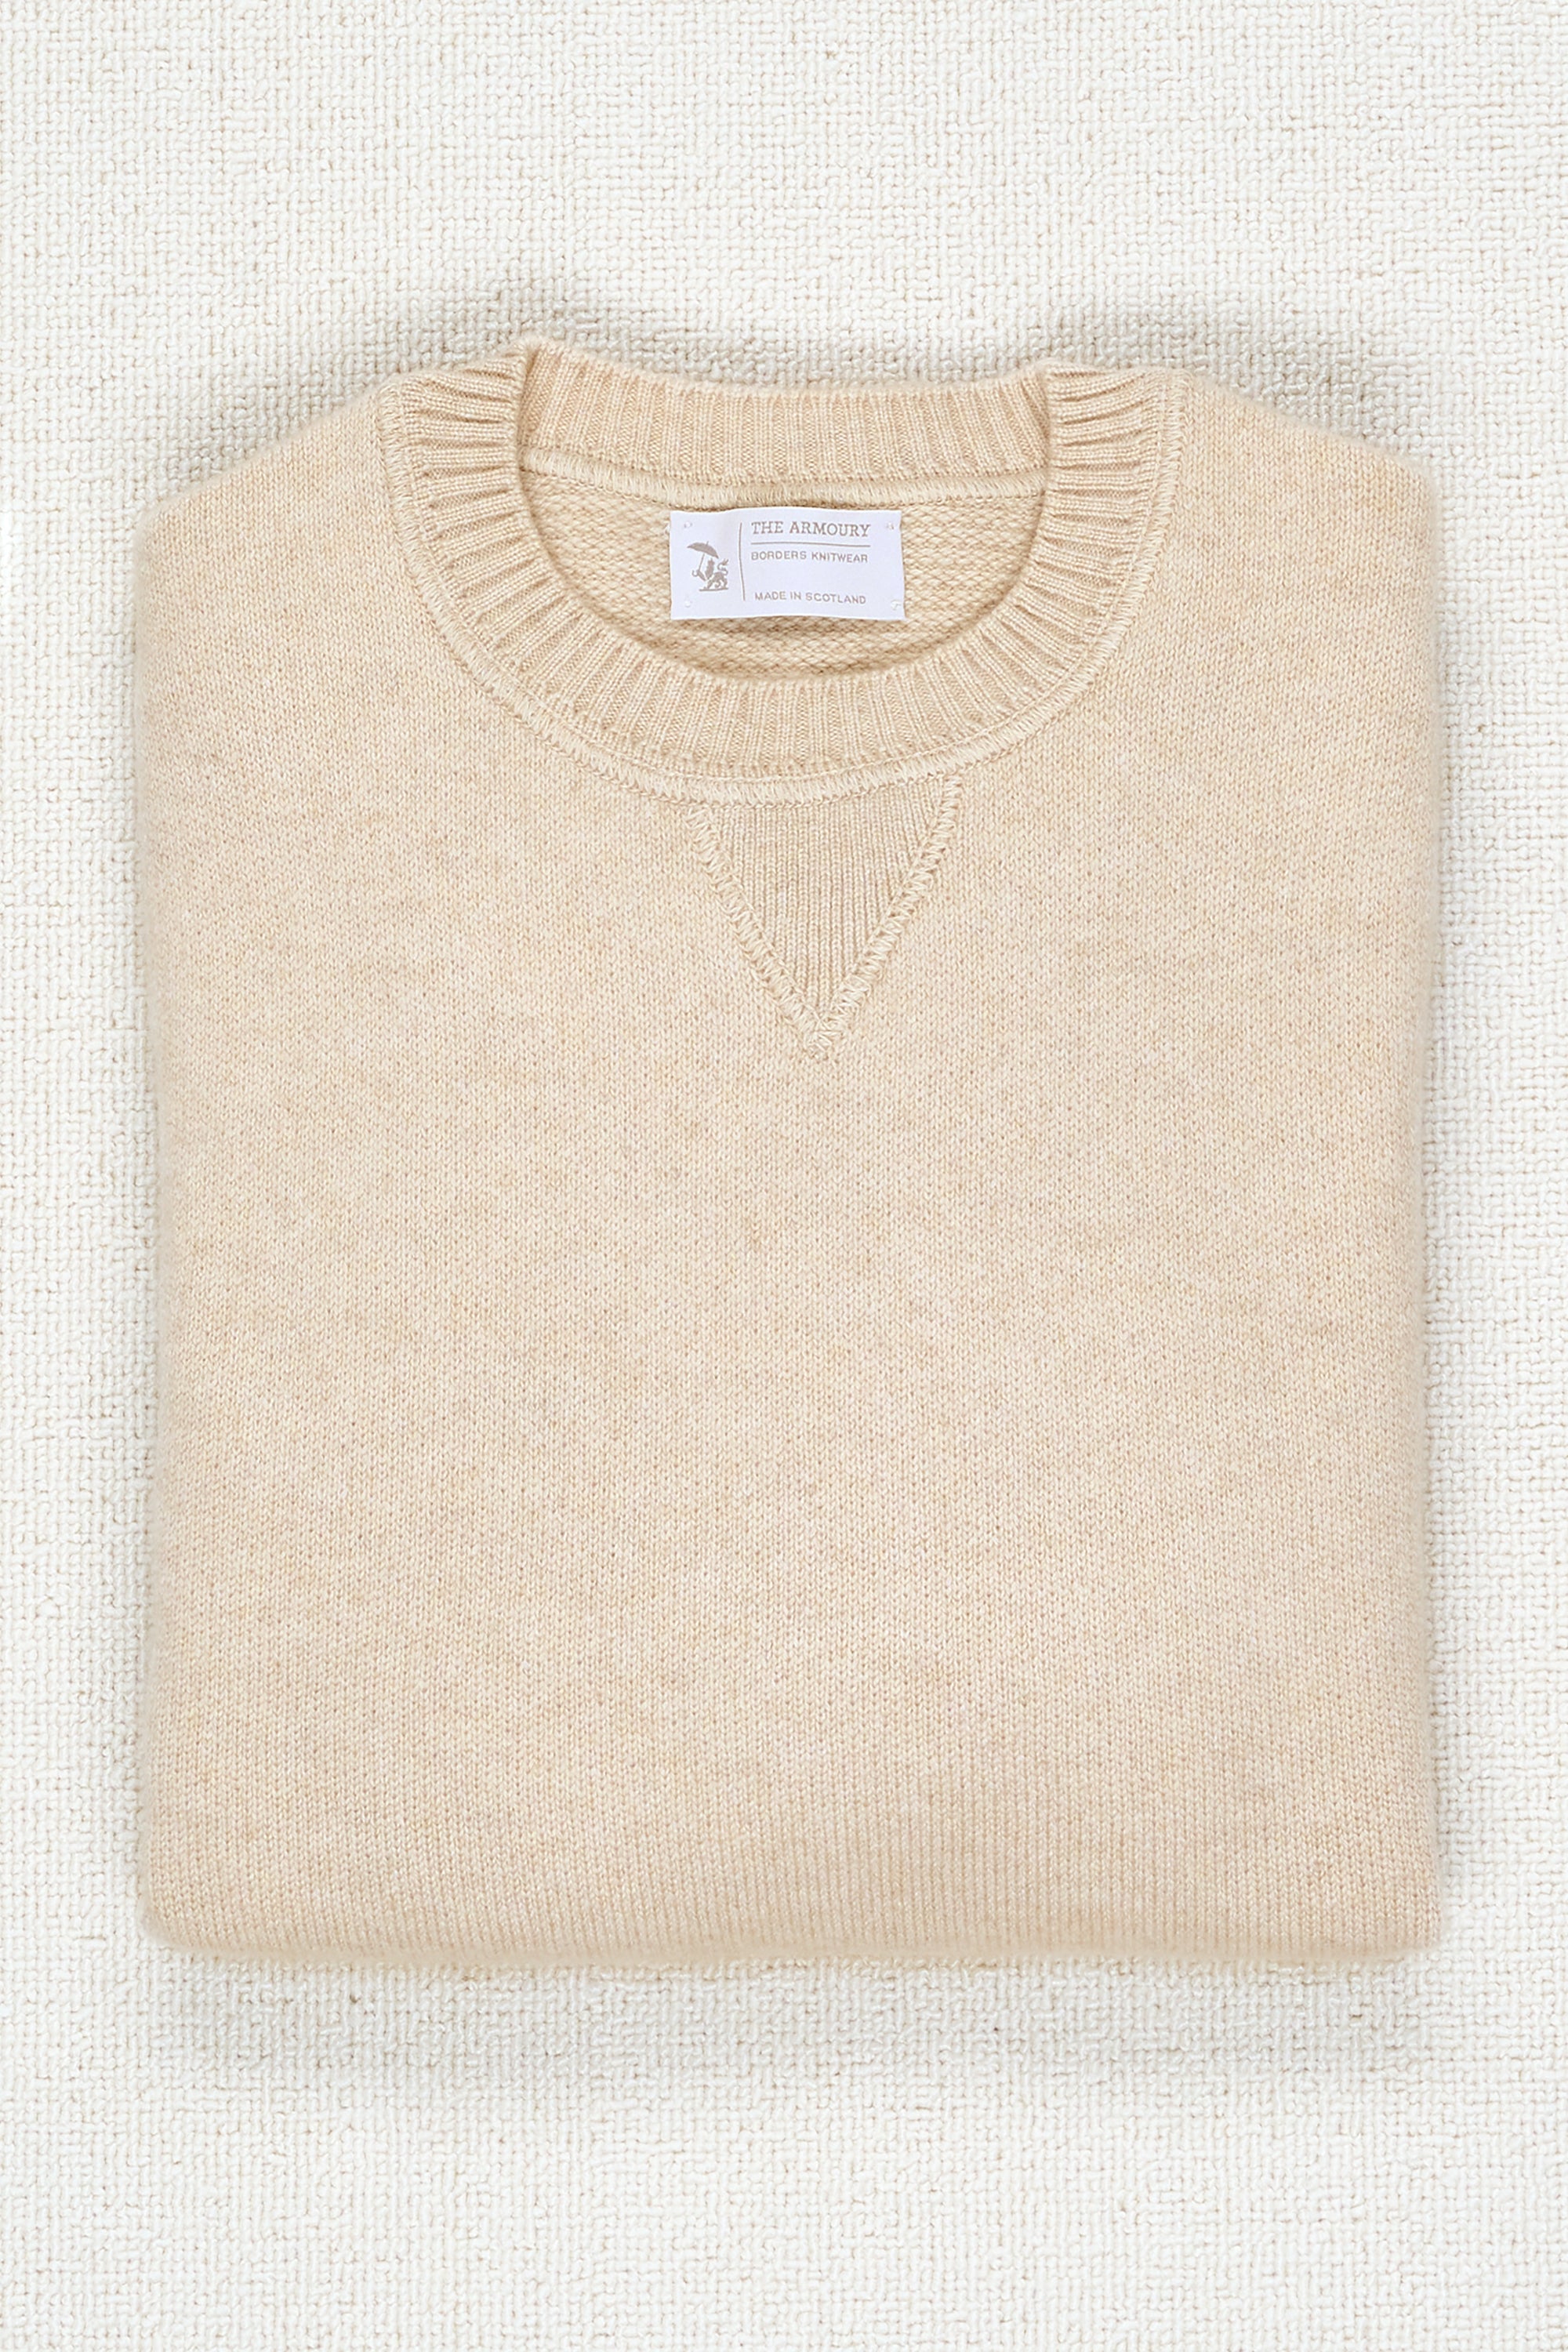 The Armoury Oatmeal Cashmere Sweatshirt